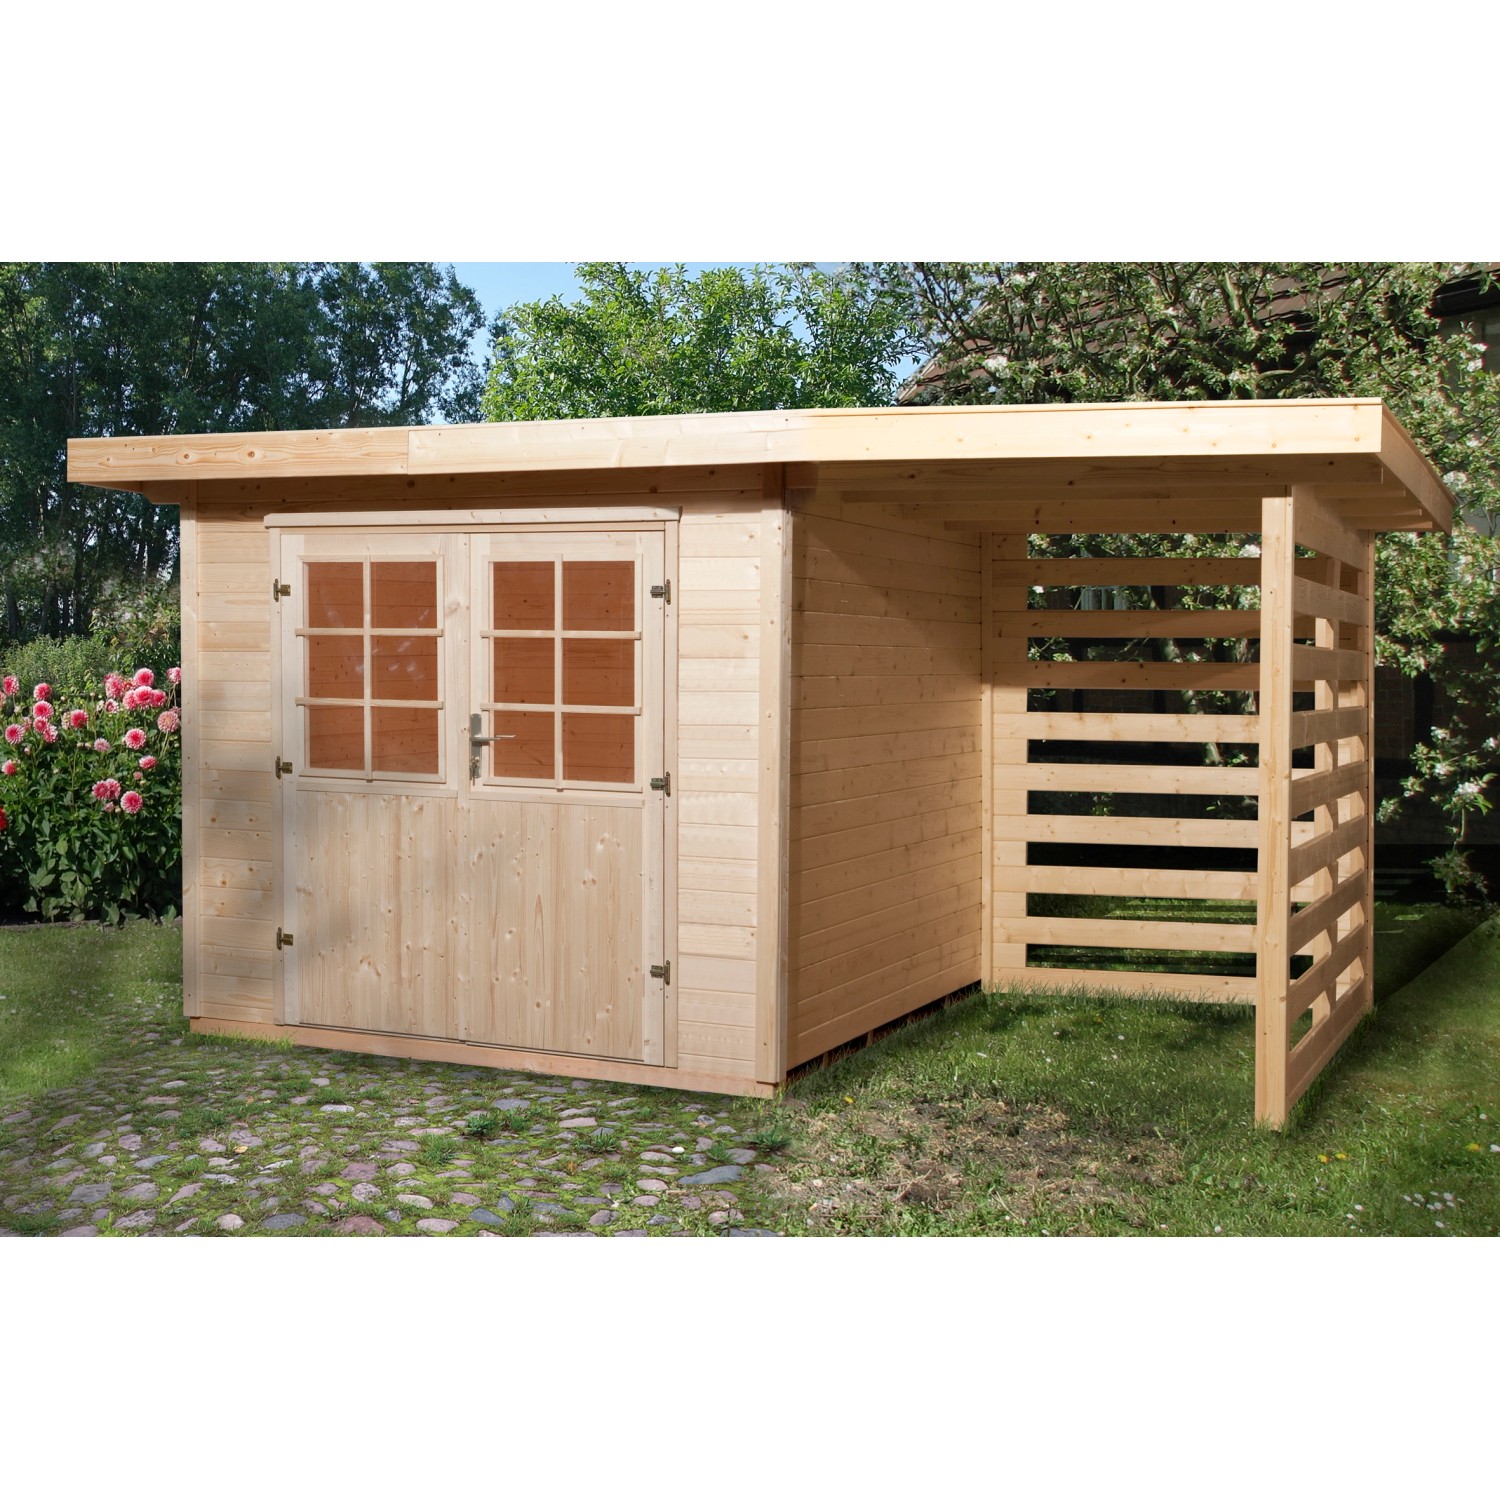 OBI Outdoor Living Holz-Gartenhaus La Spezia Flachdach 385 cm x 314 cm von OBI Outdoor Living